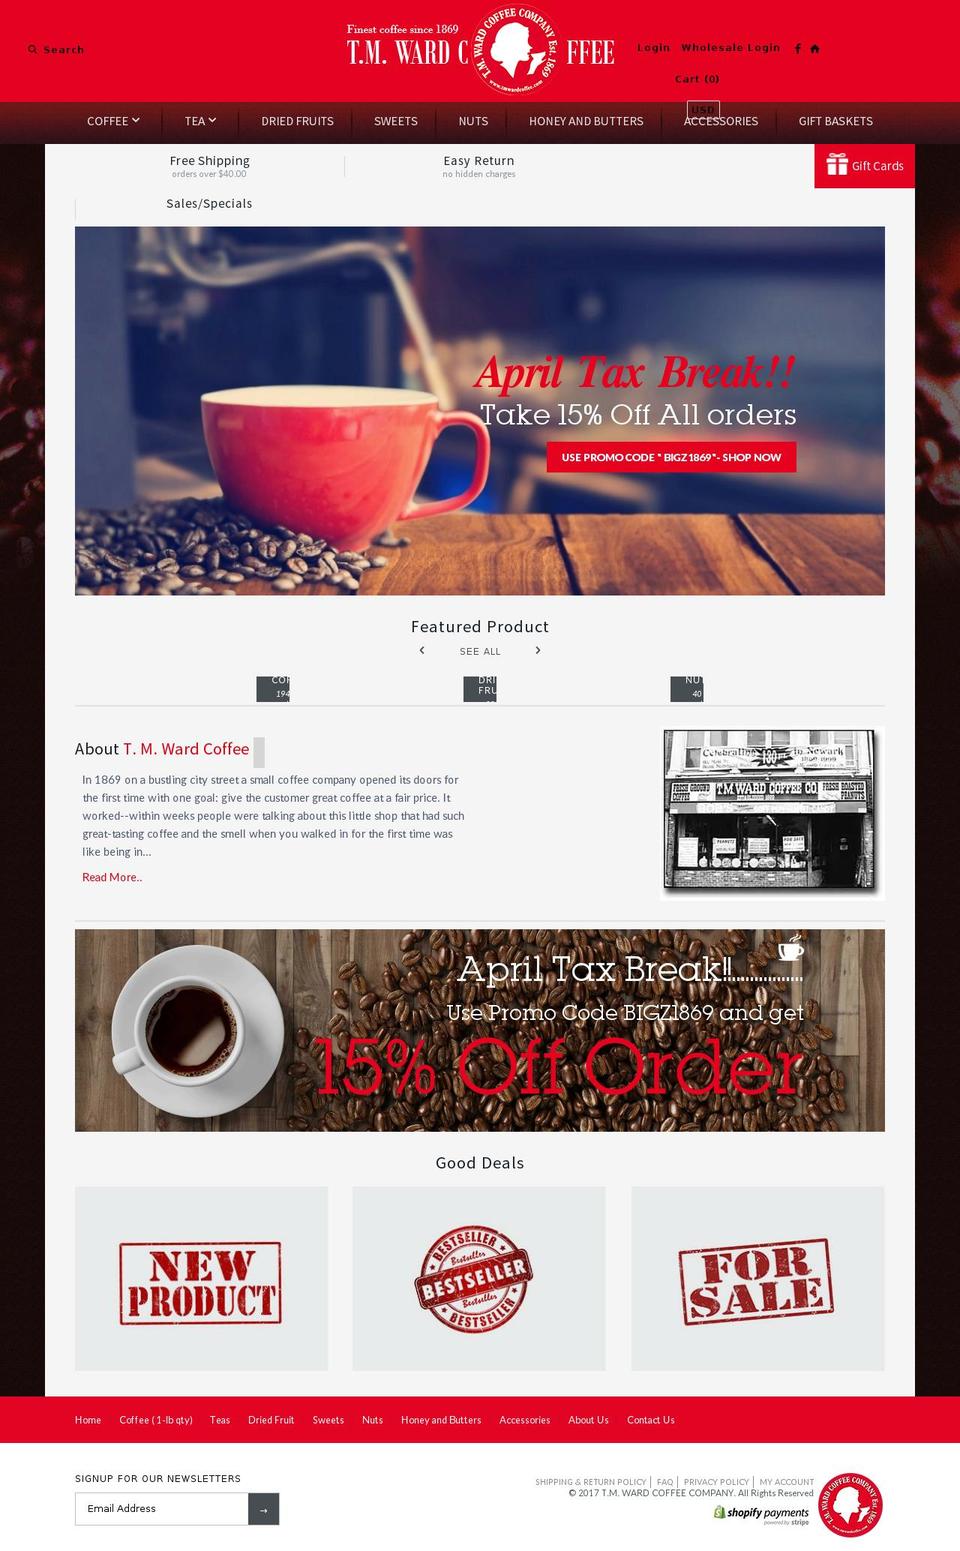 tmwardcoffee.com shopify website screenshot